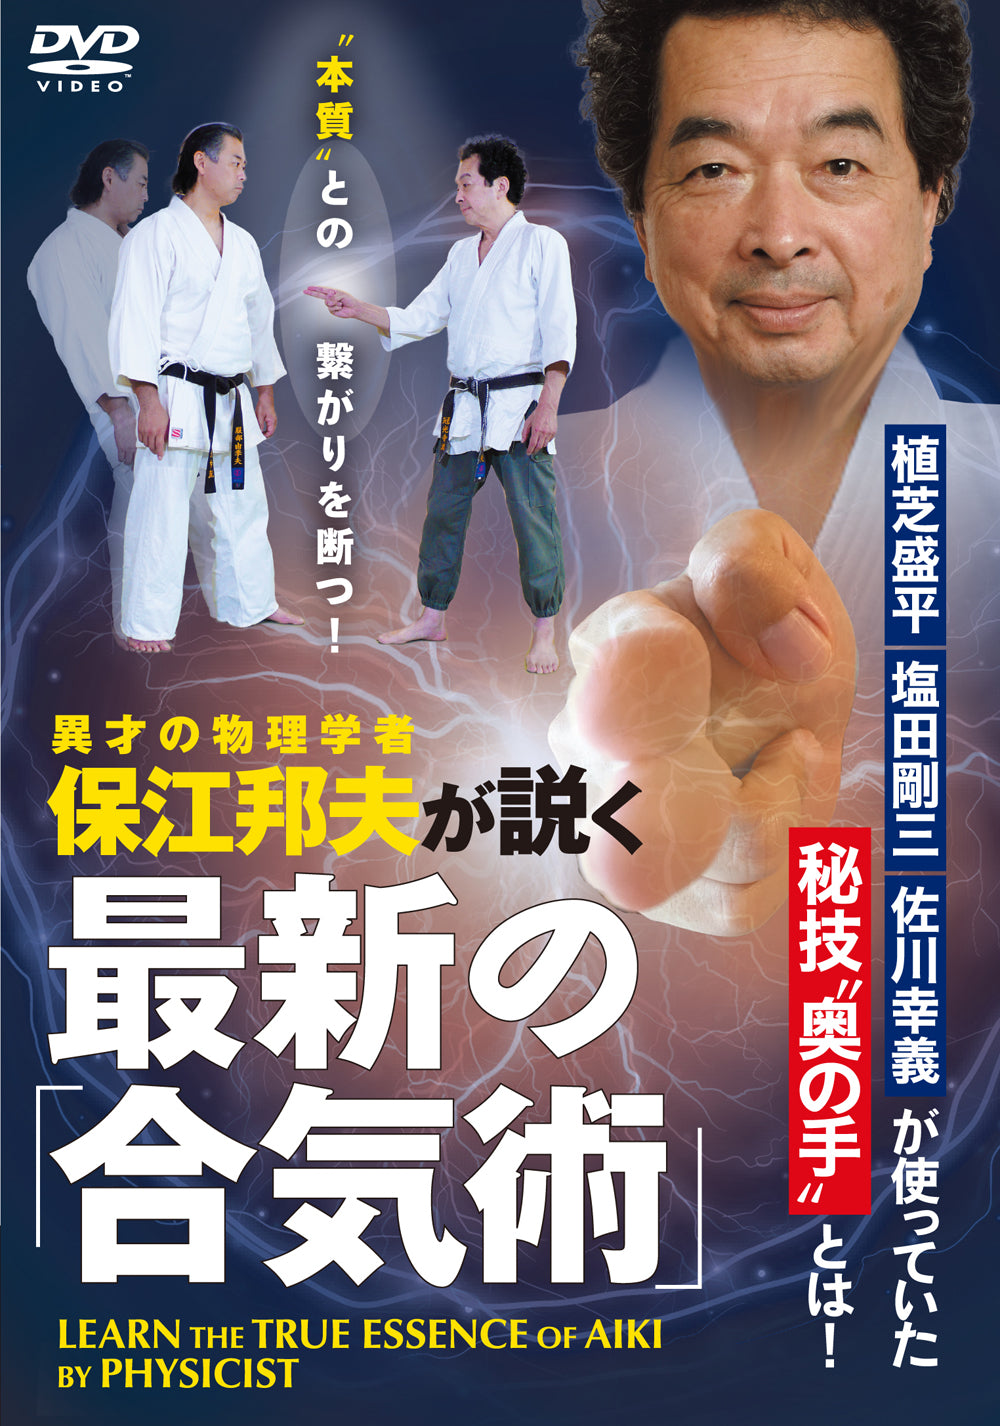 Aprenda la verdadera esencia del Aiki con un físico DVD de Kunio Yasue